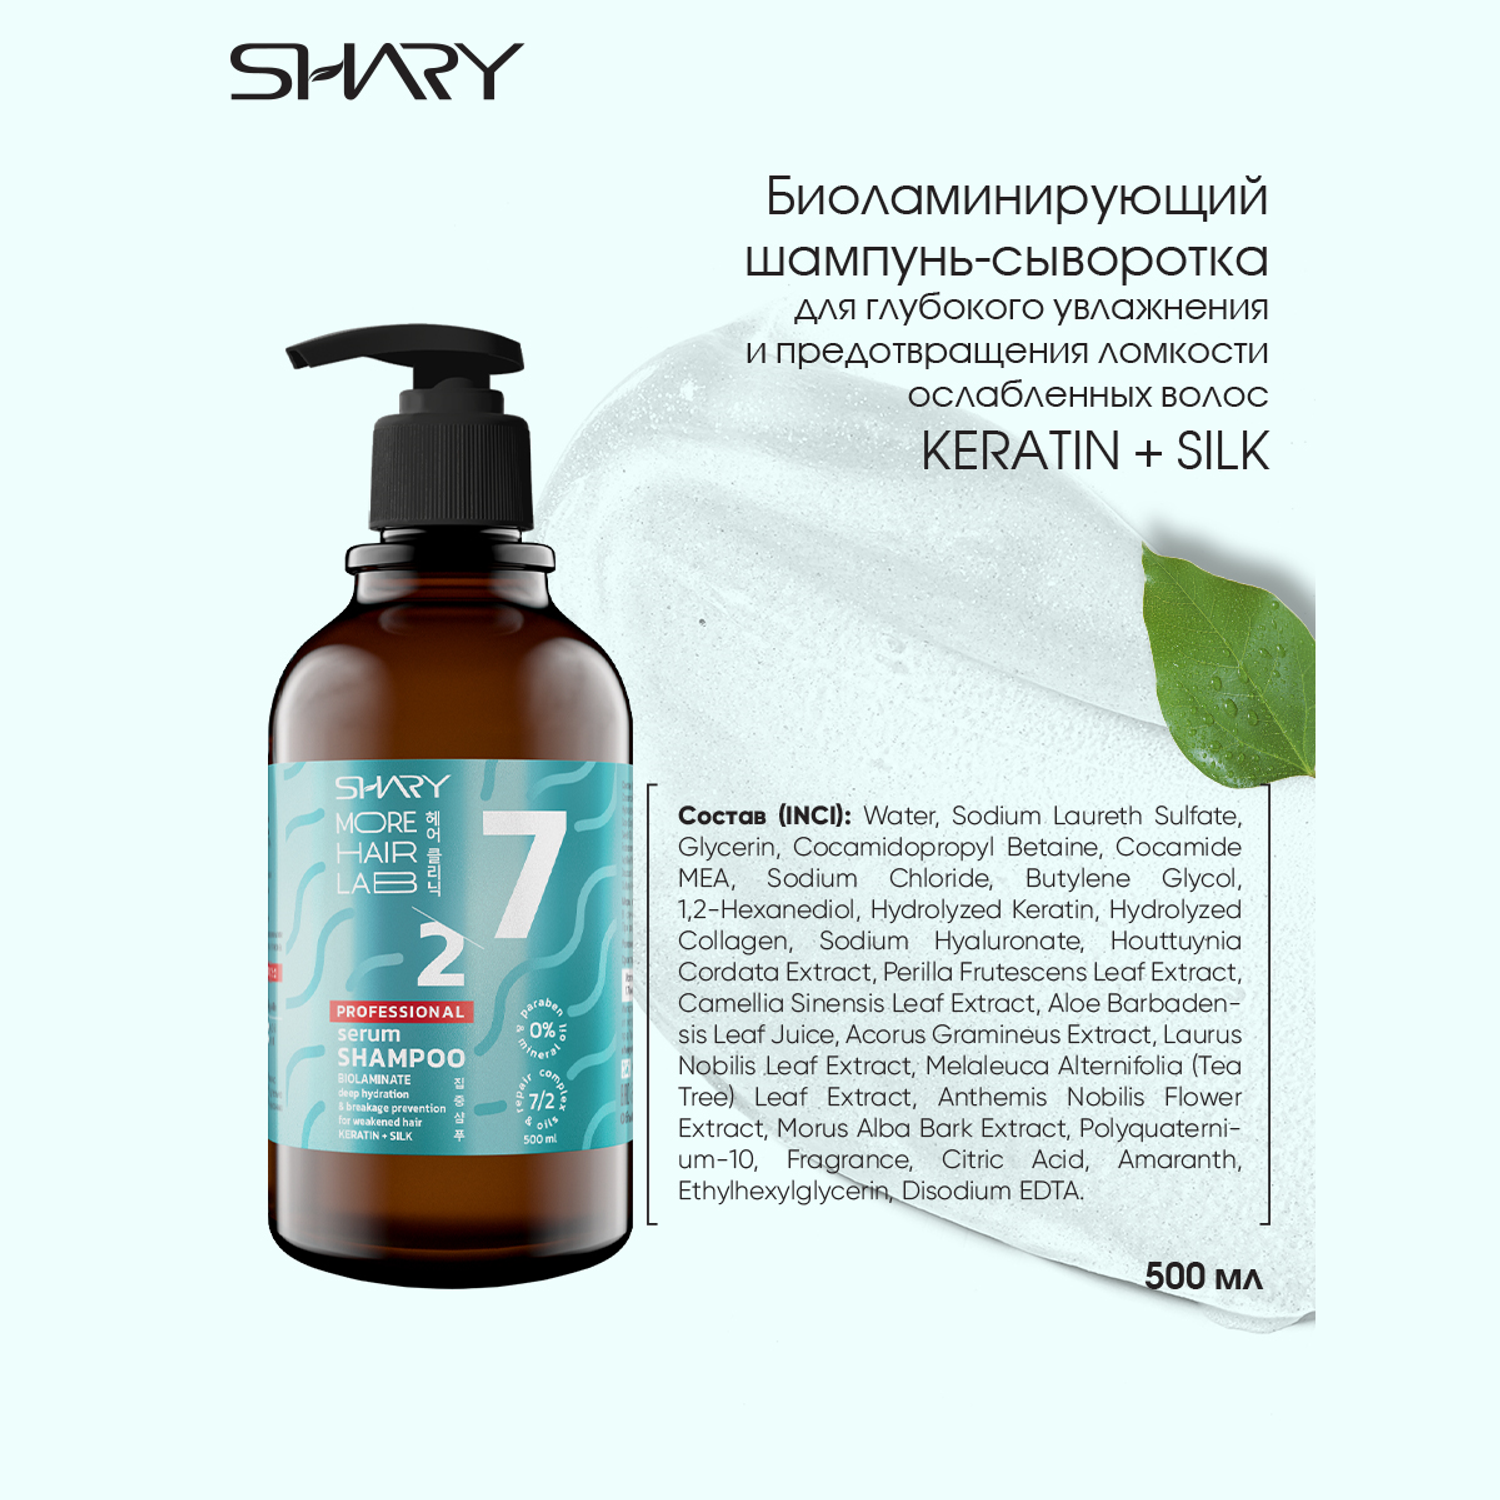 Шампунь сыворотка SHARY Биоламинирующий для увлажнения и против ломкости волос Keratin Silk 500 мл - фото 5